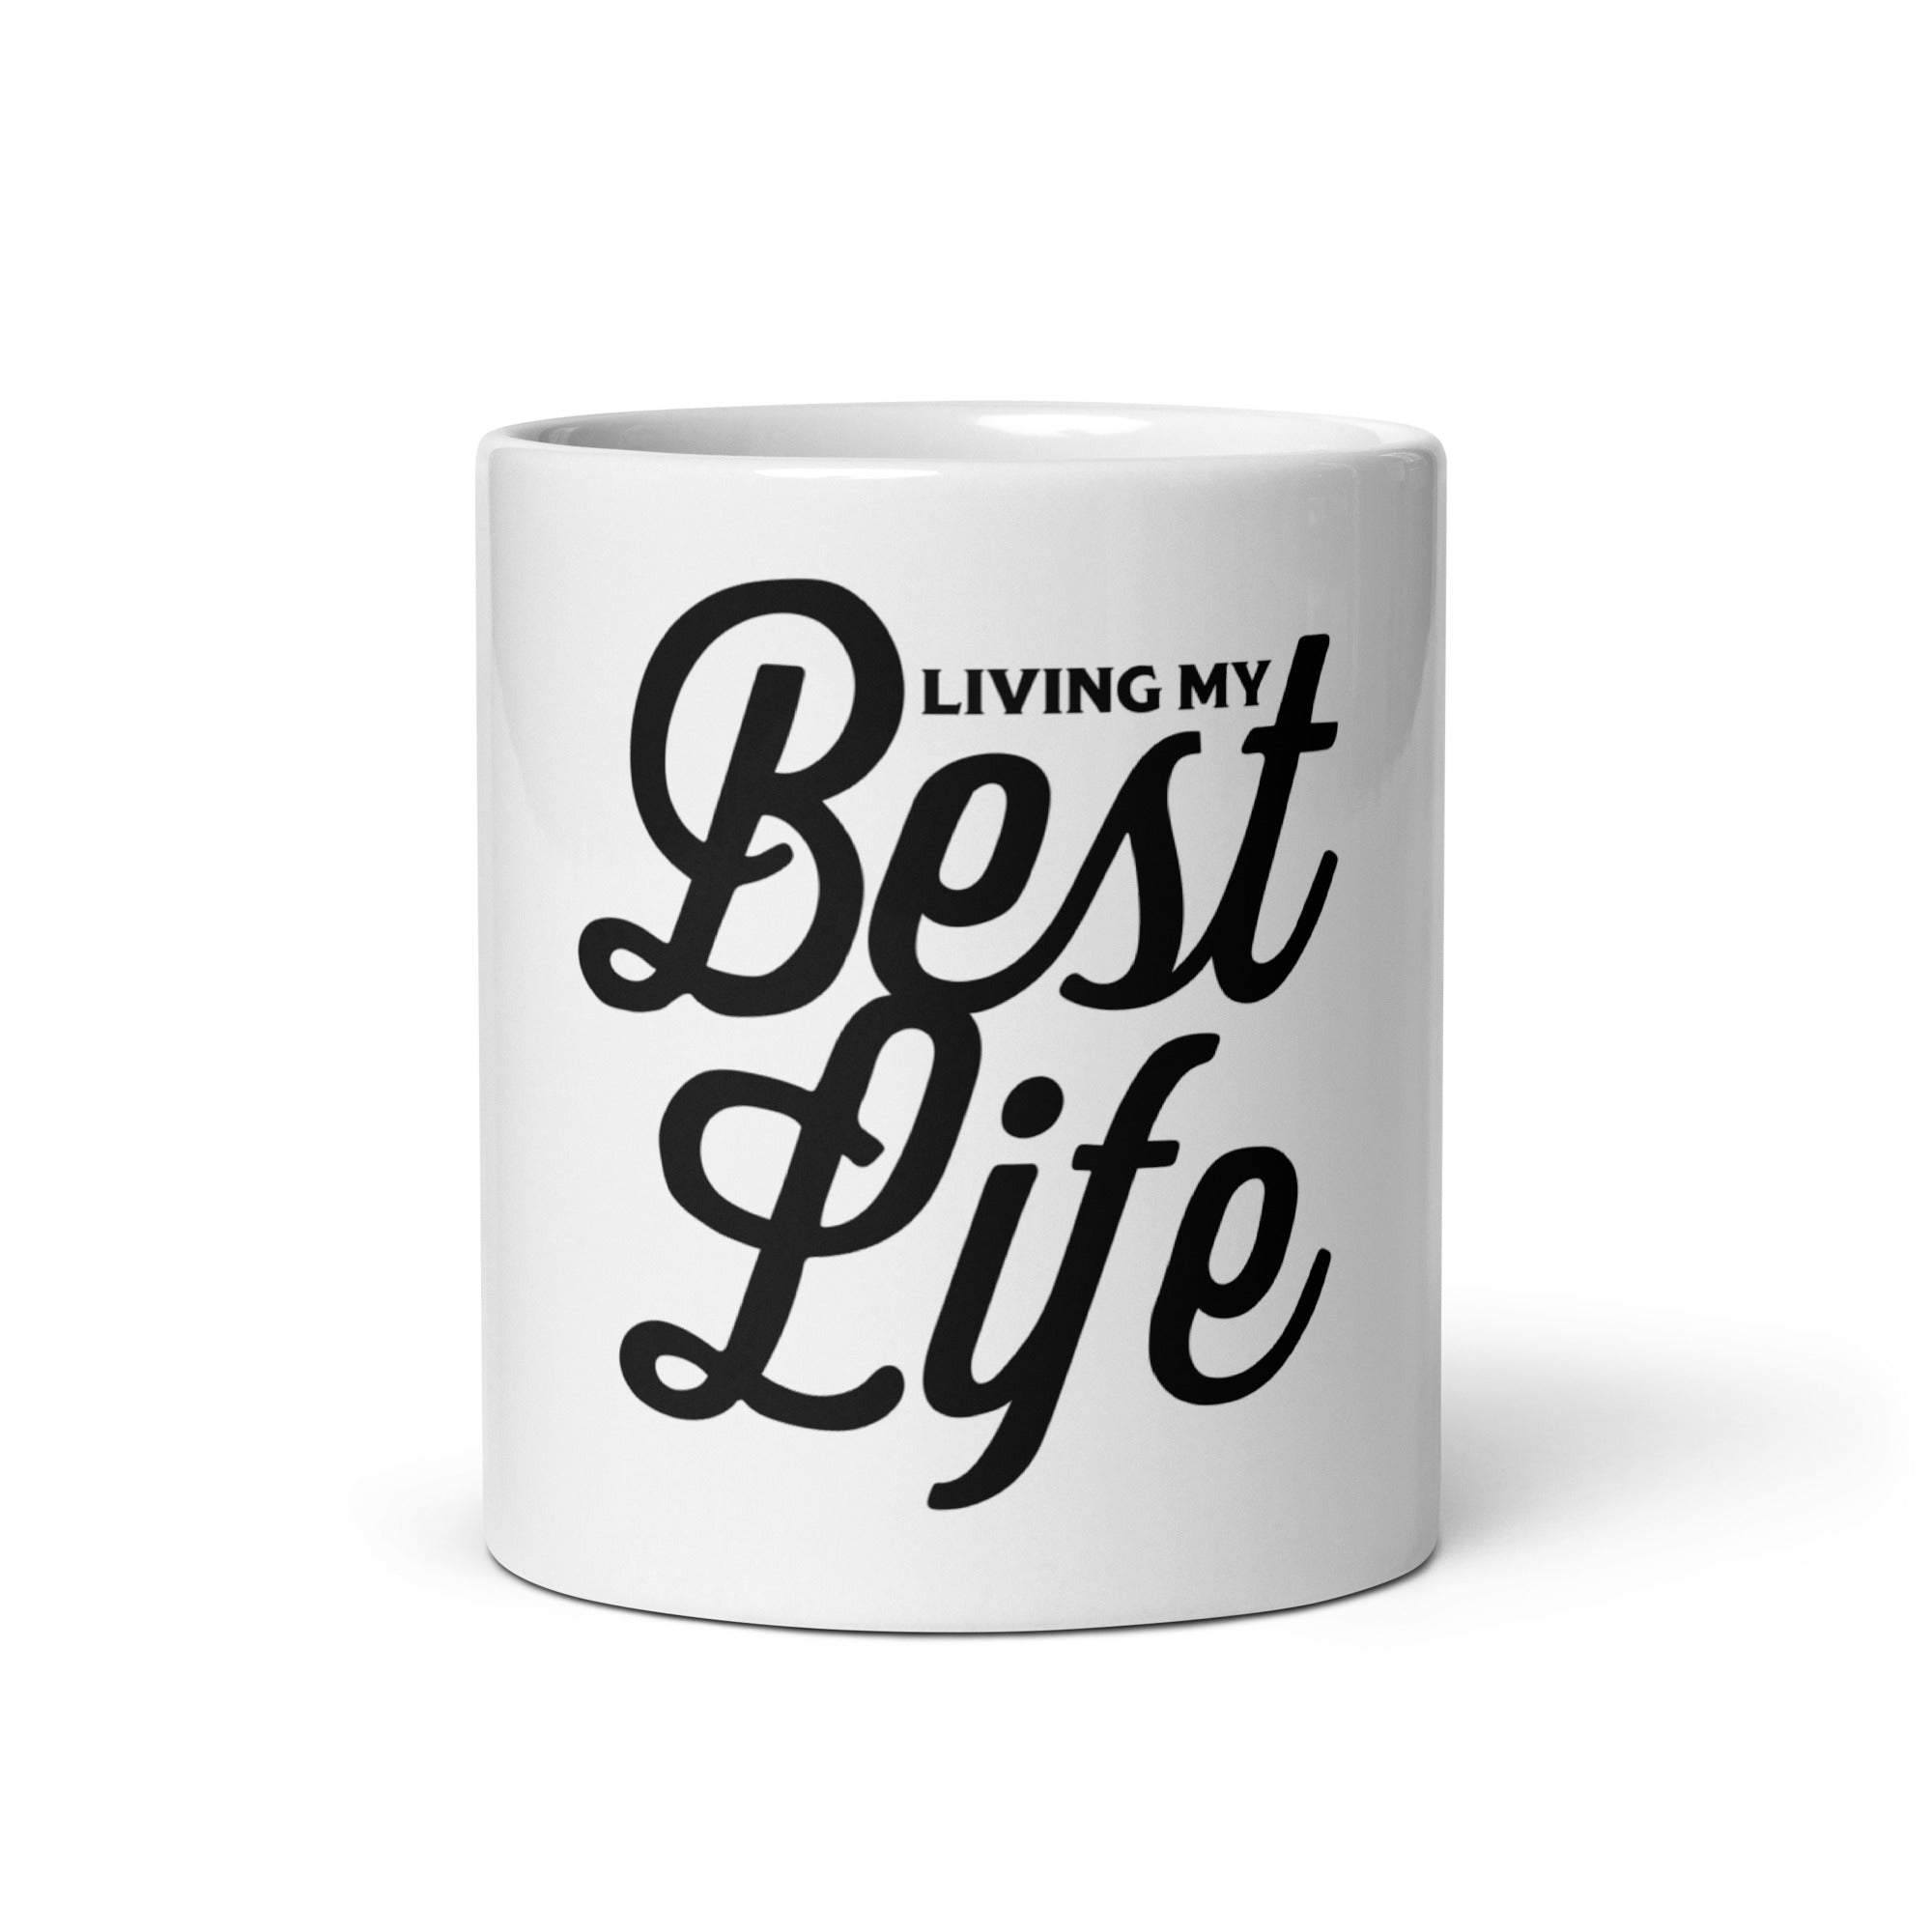 Best Life Mug 11oz